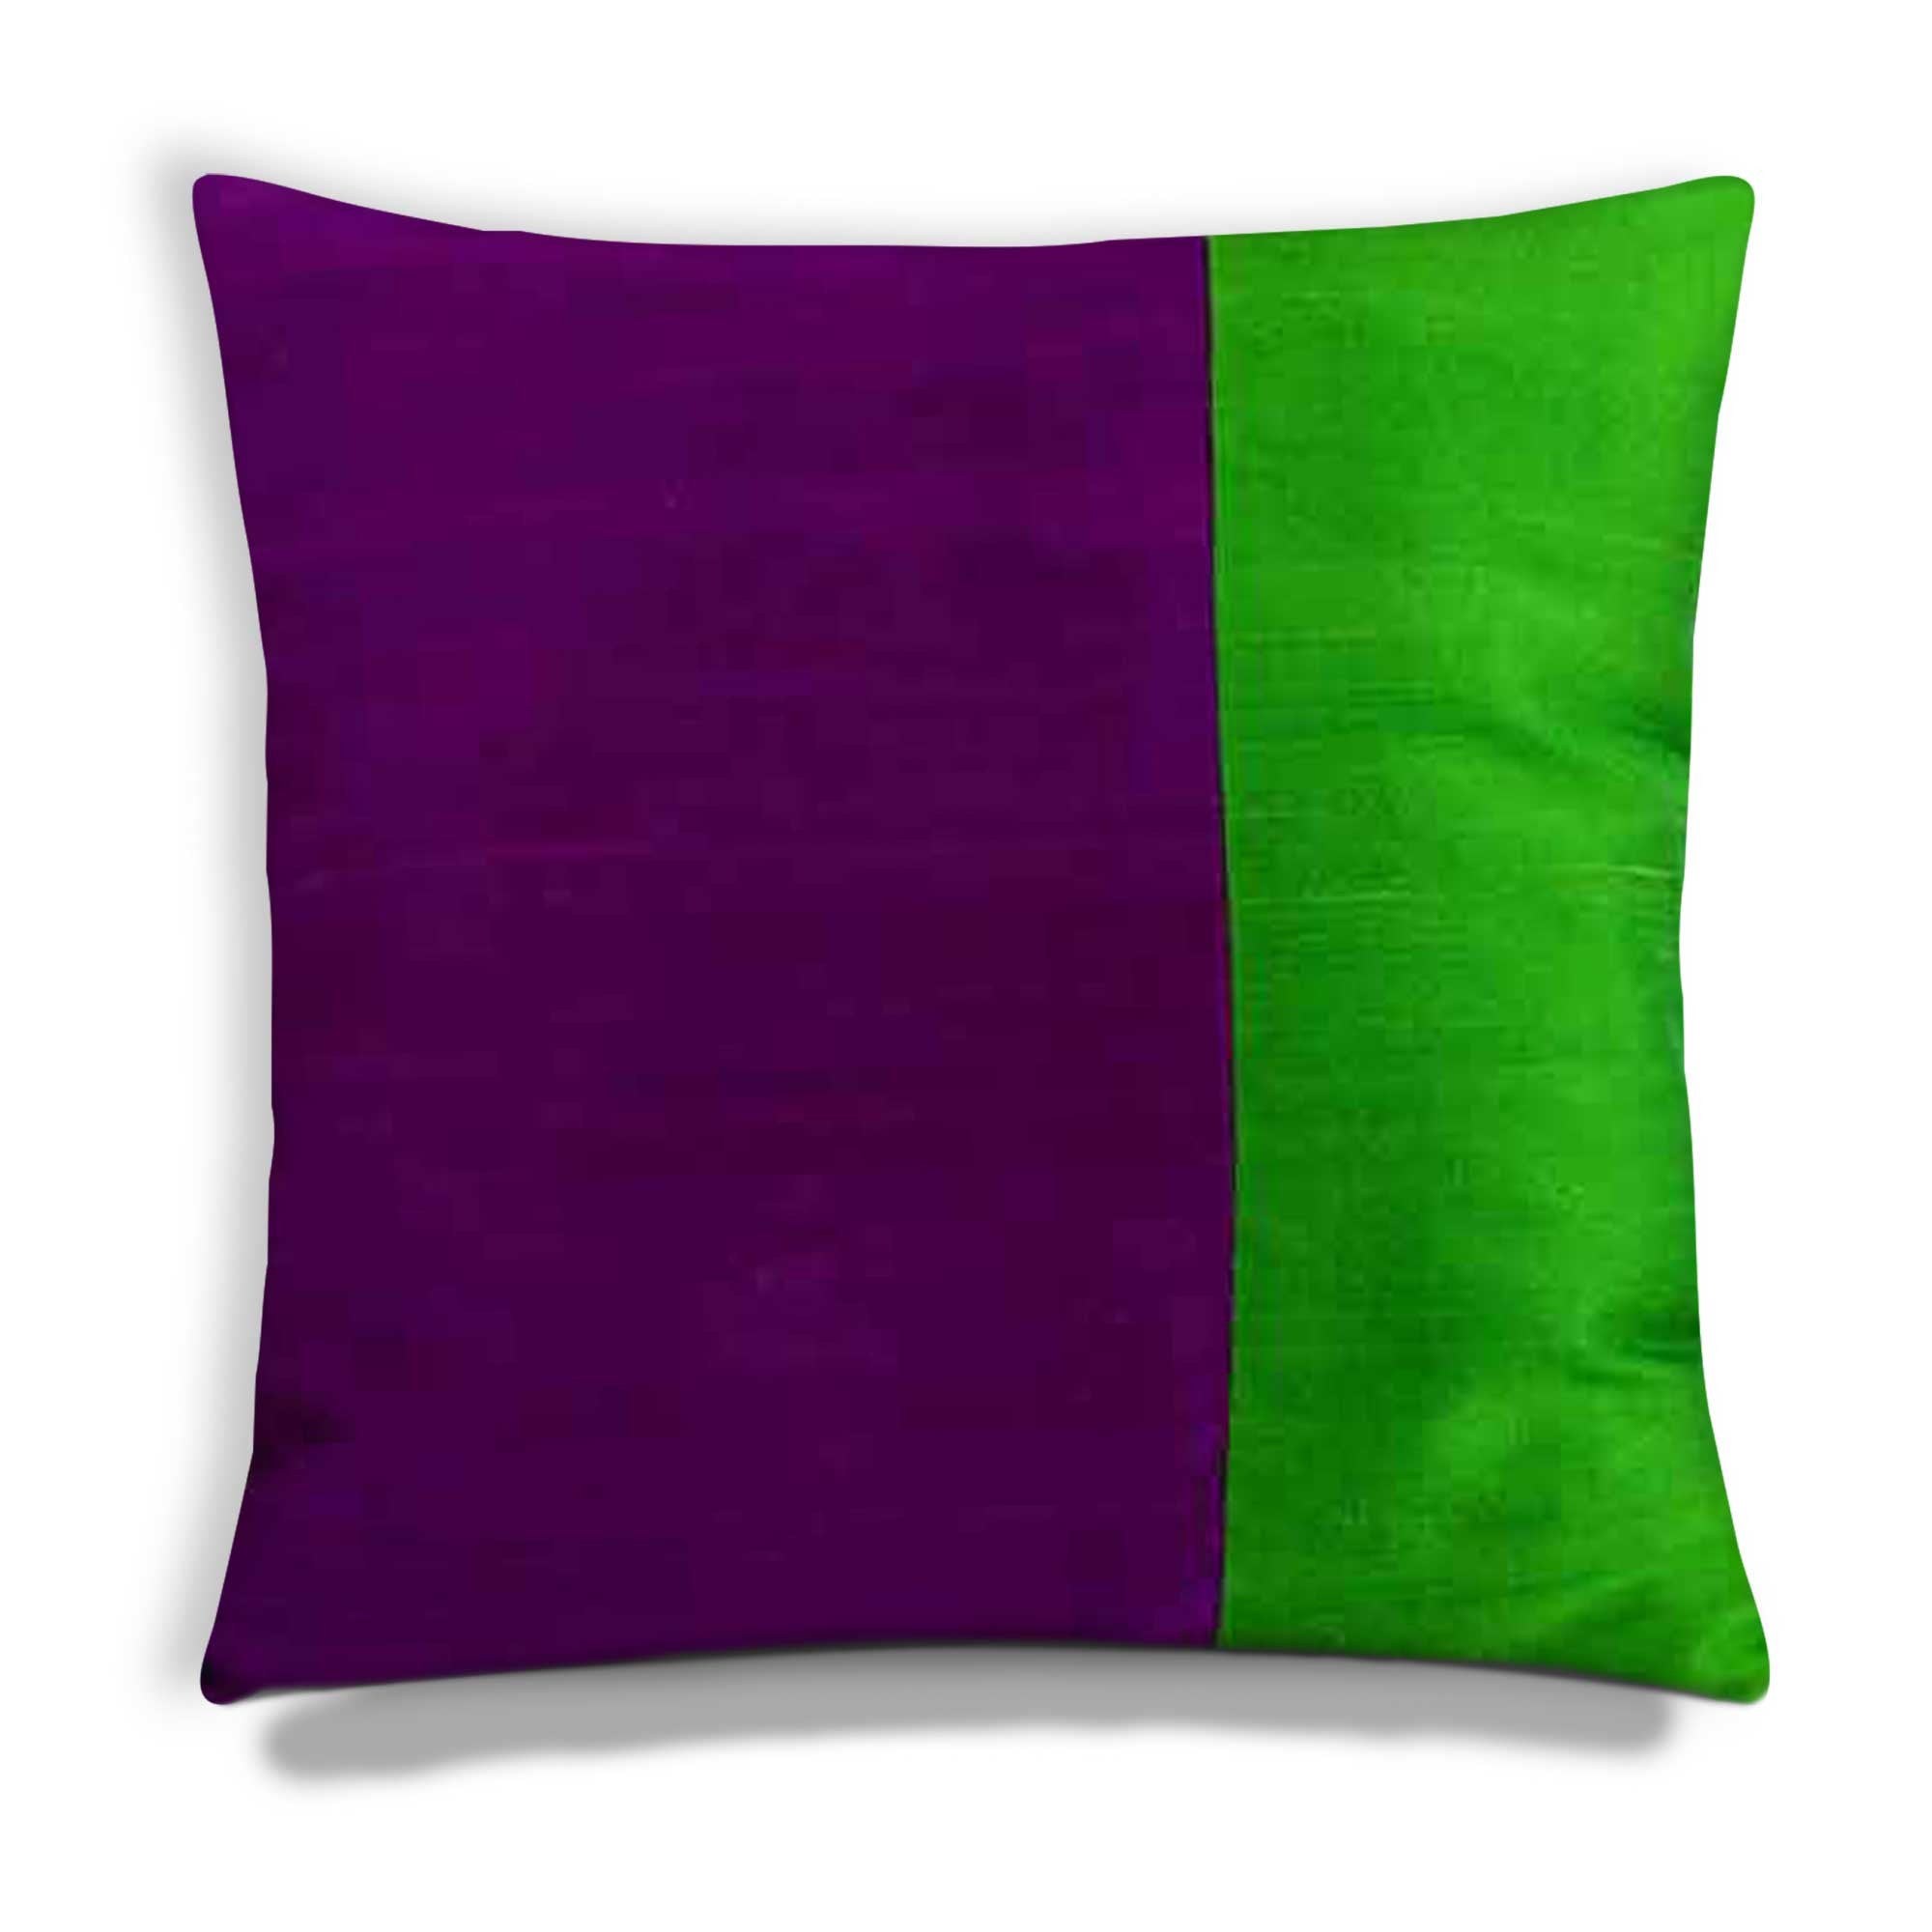 https://www.desicraftshop.com/cdn/shop/products/purple-green-silk-cushion-cover.jpg?v=1539179319